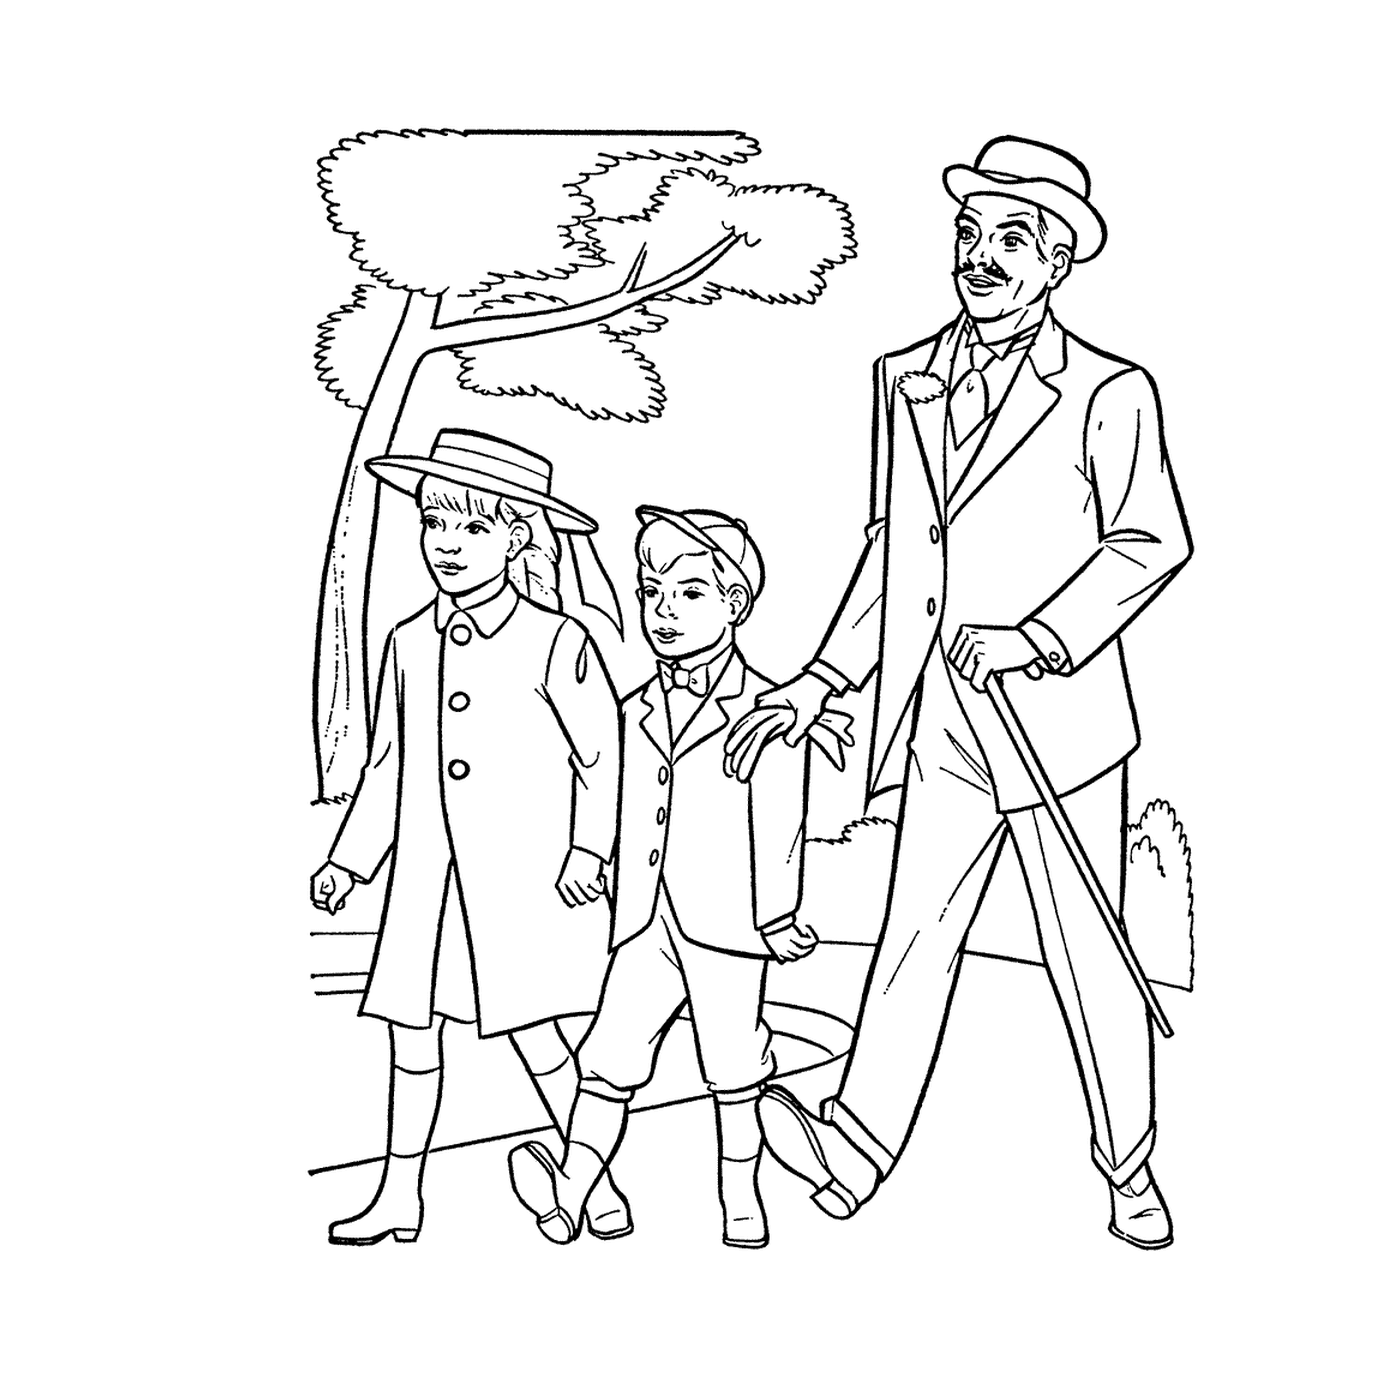  Un hombre y dos hijos 